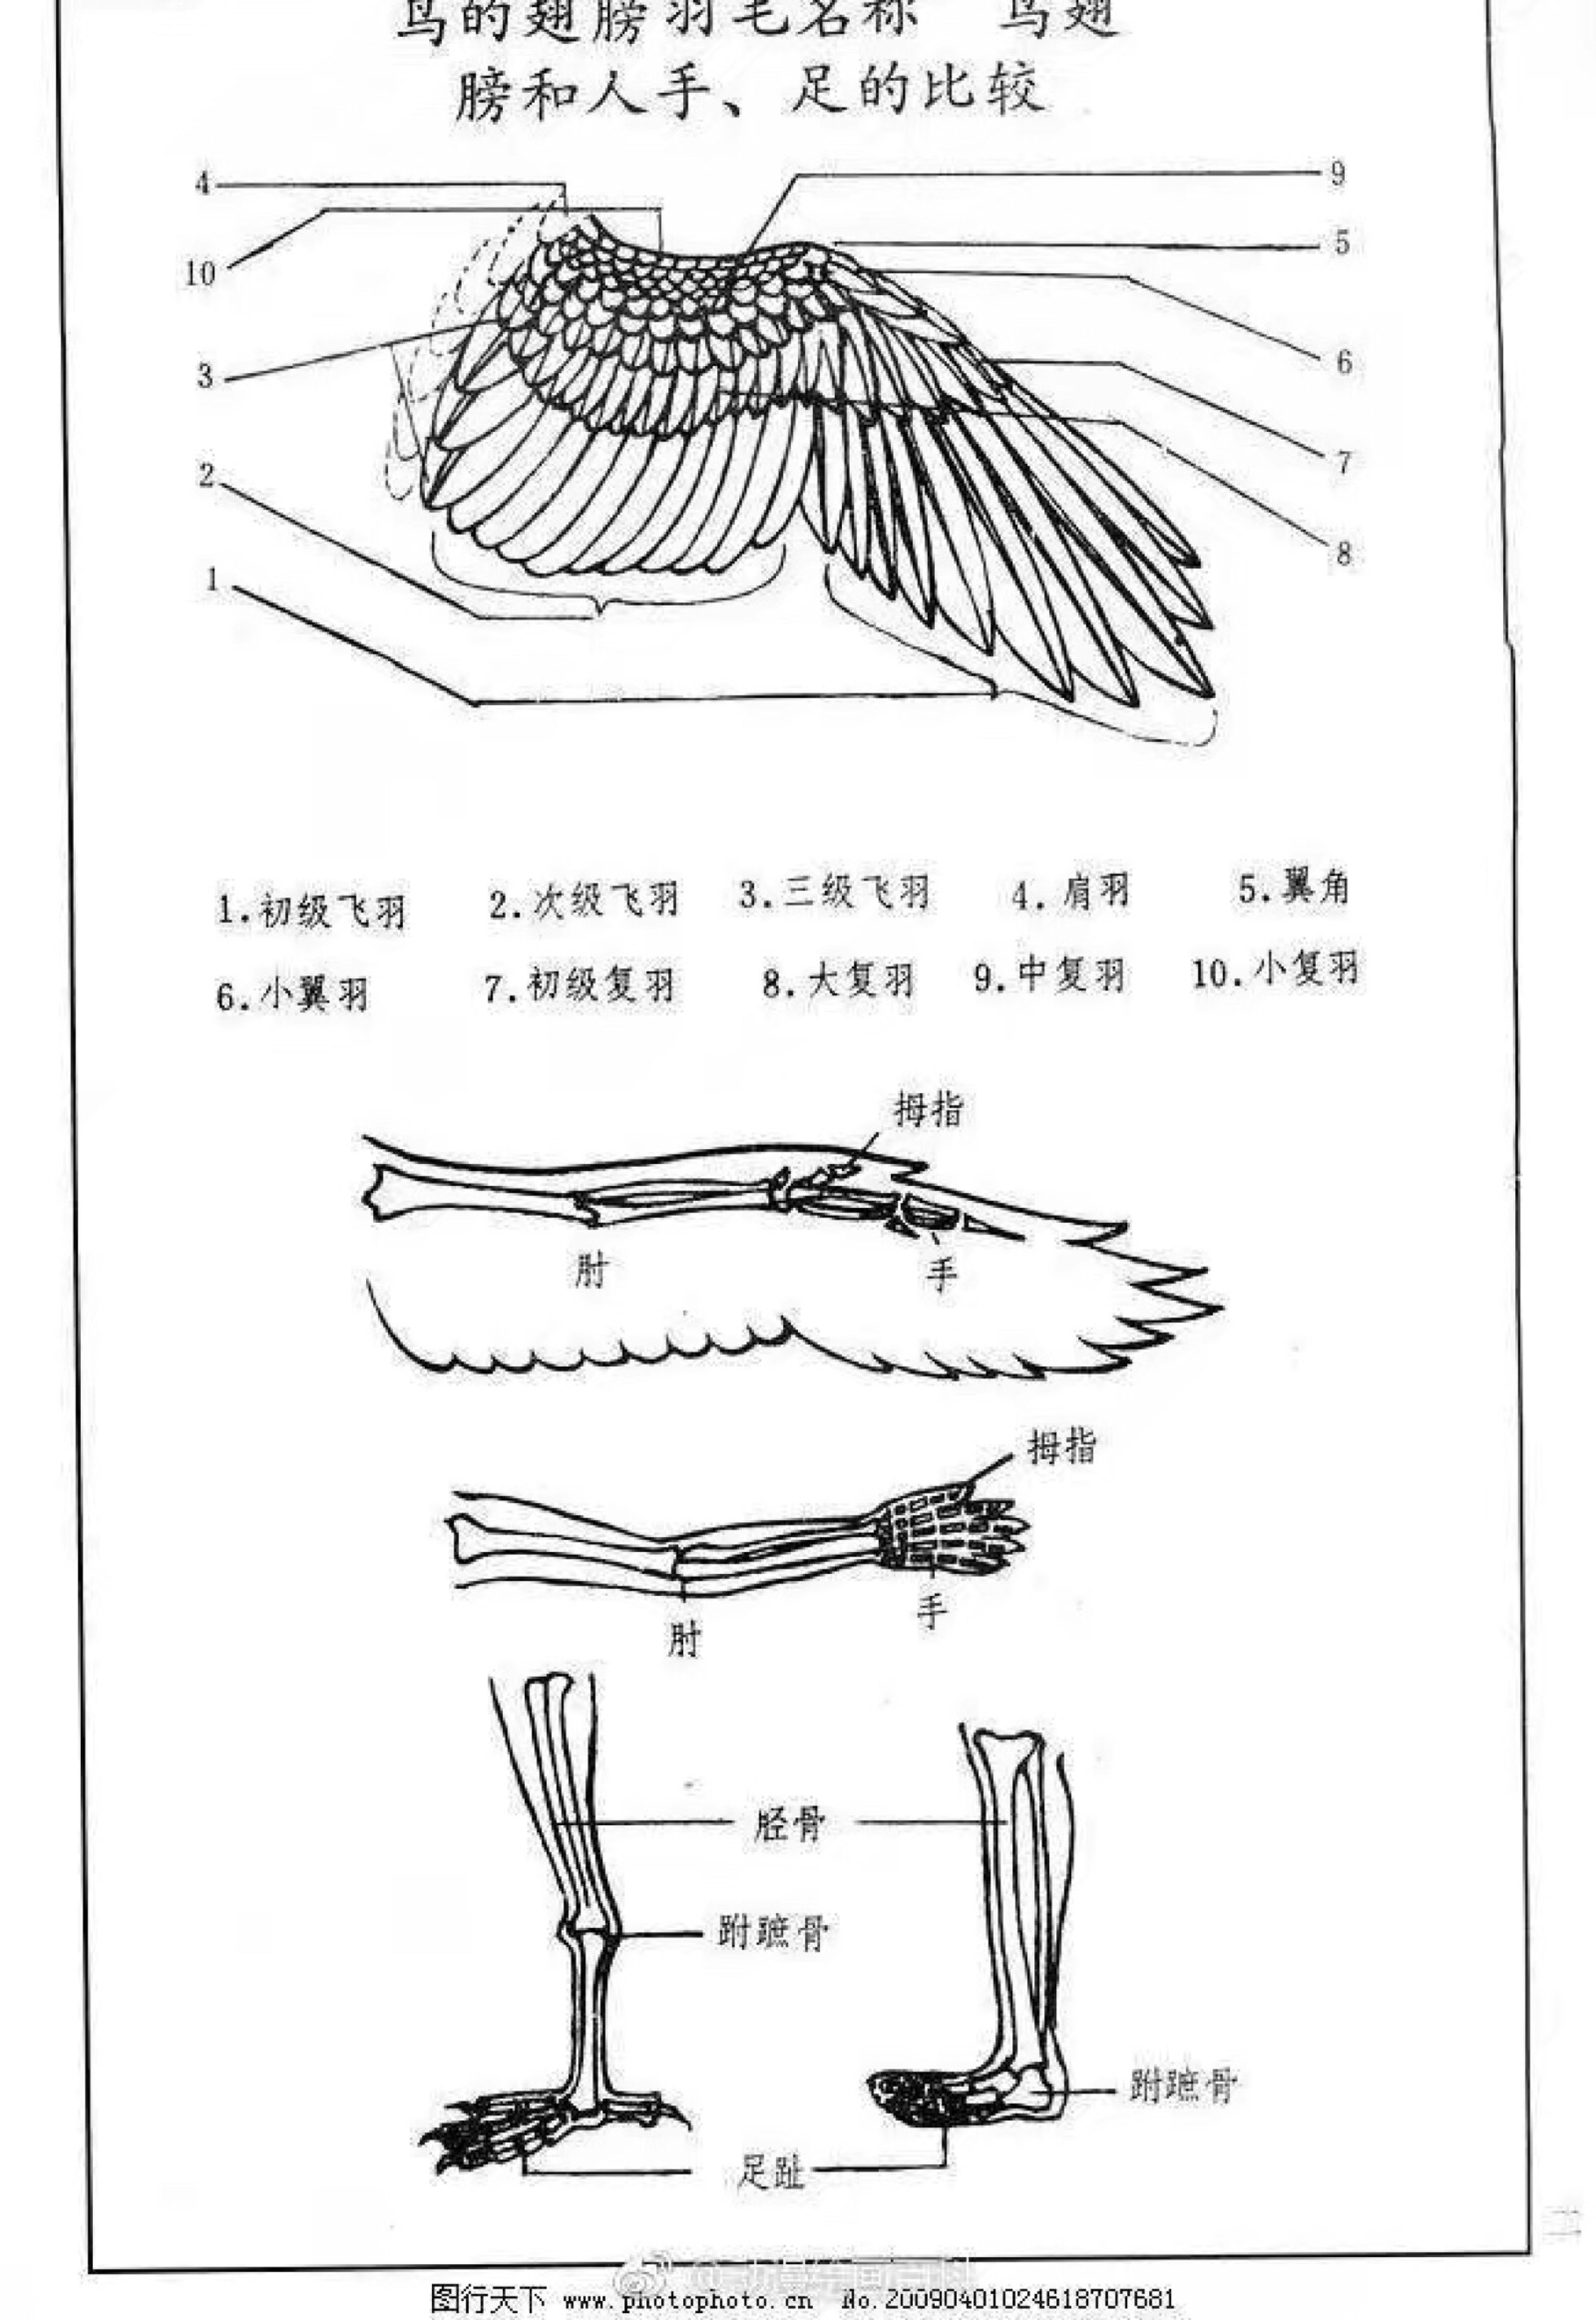 鸟的翅膀参考之后也可以画成天使的翅膀